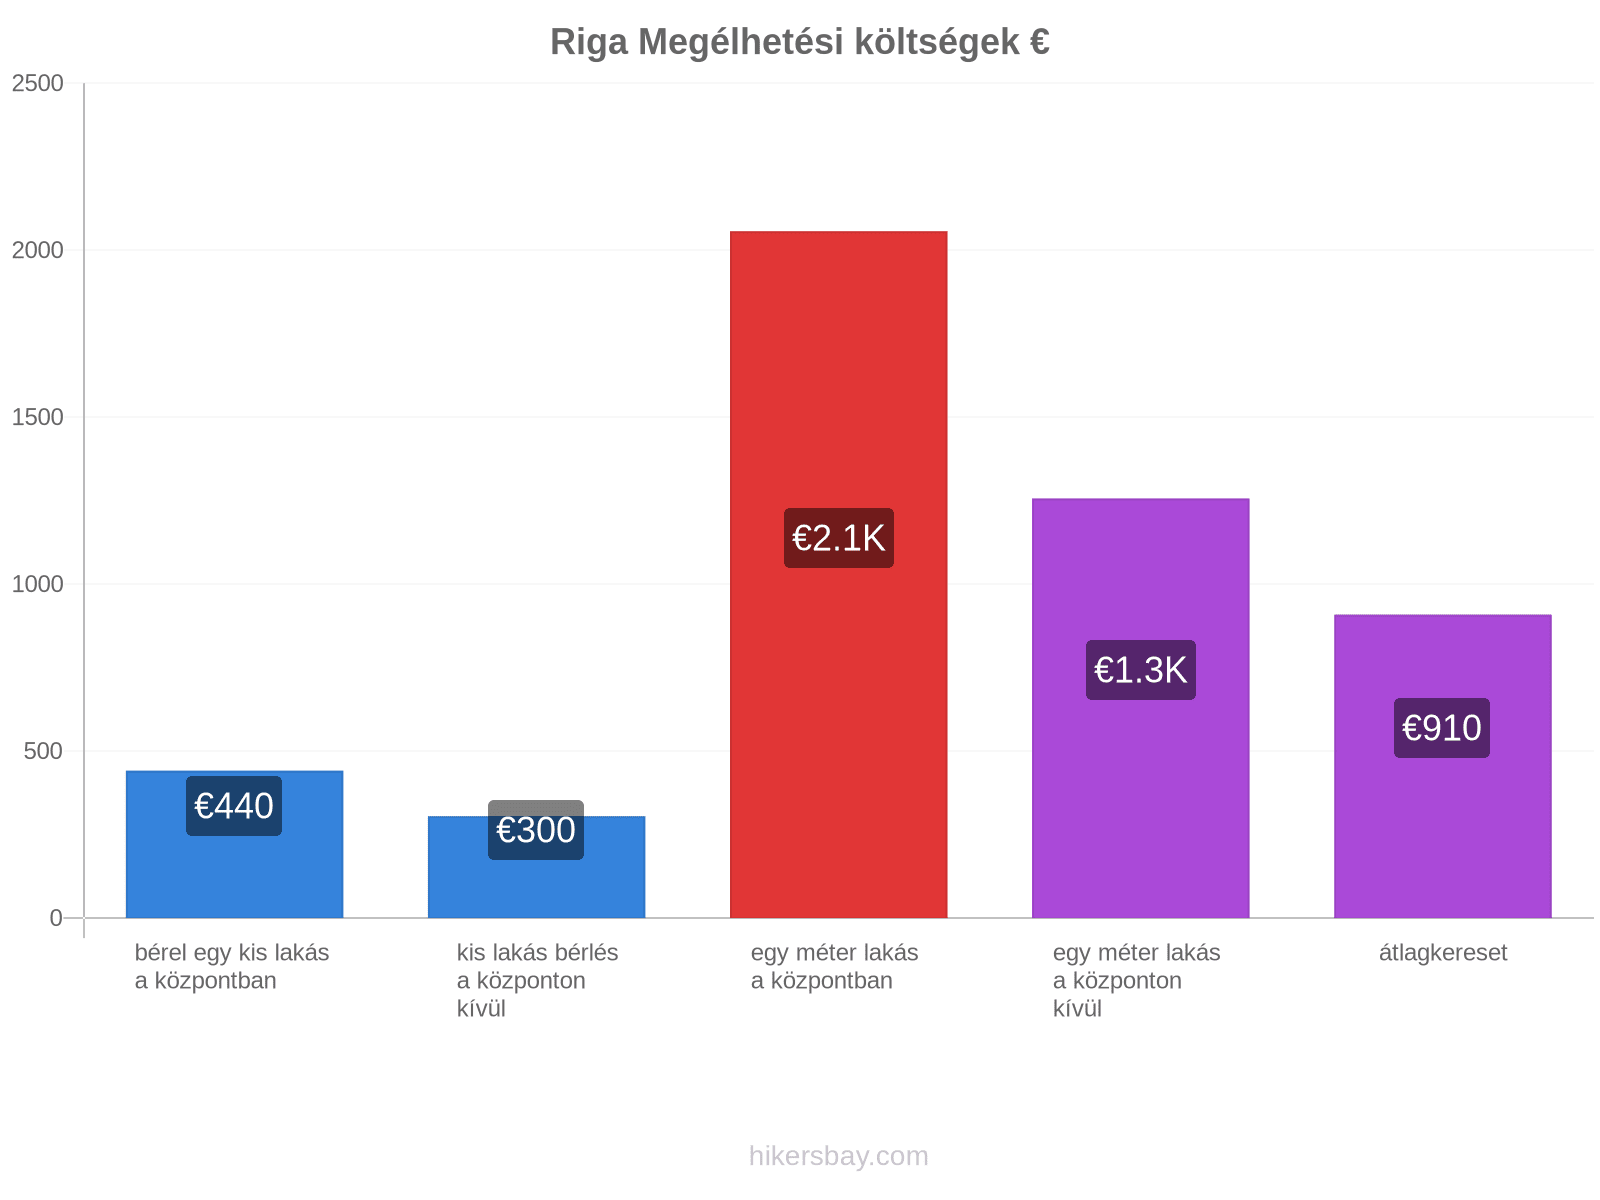 Riga megélhetési költségek hikersbay.com